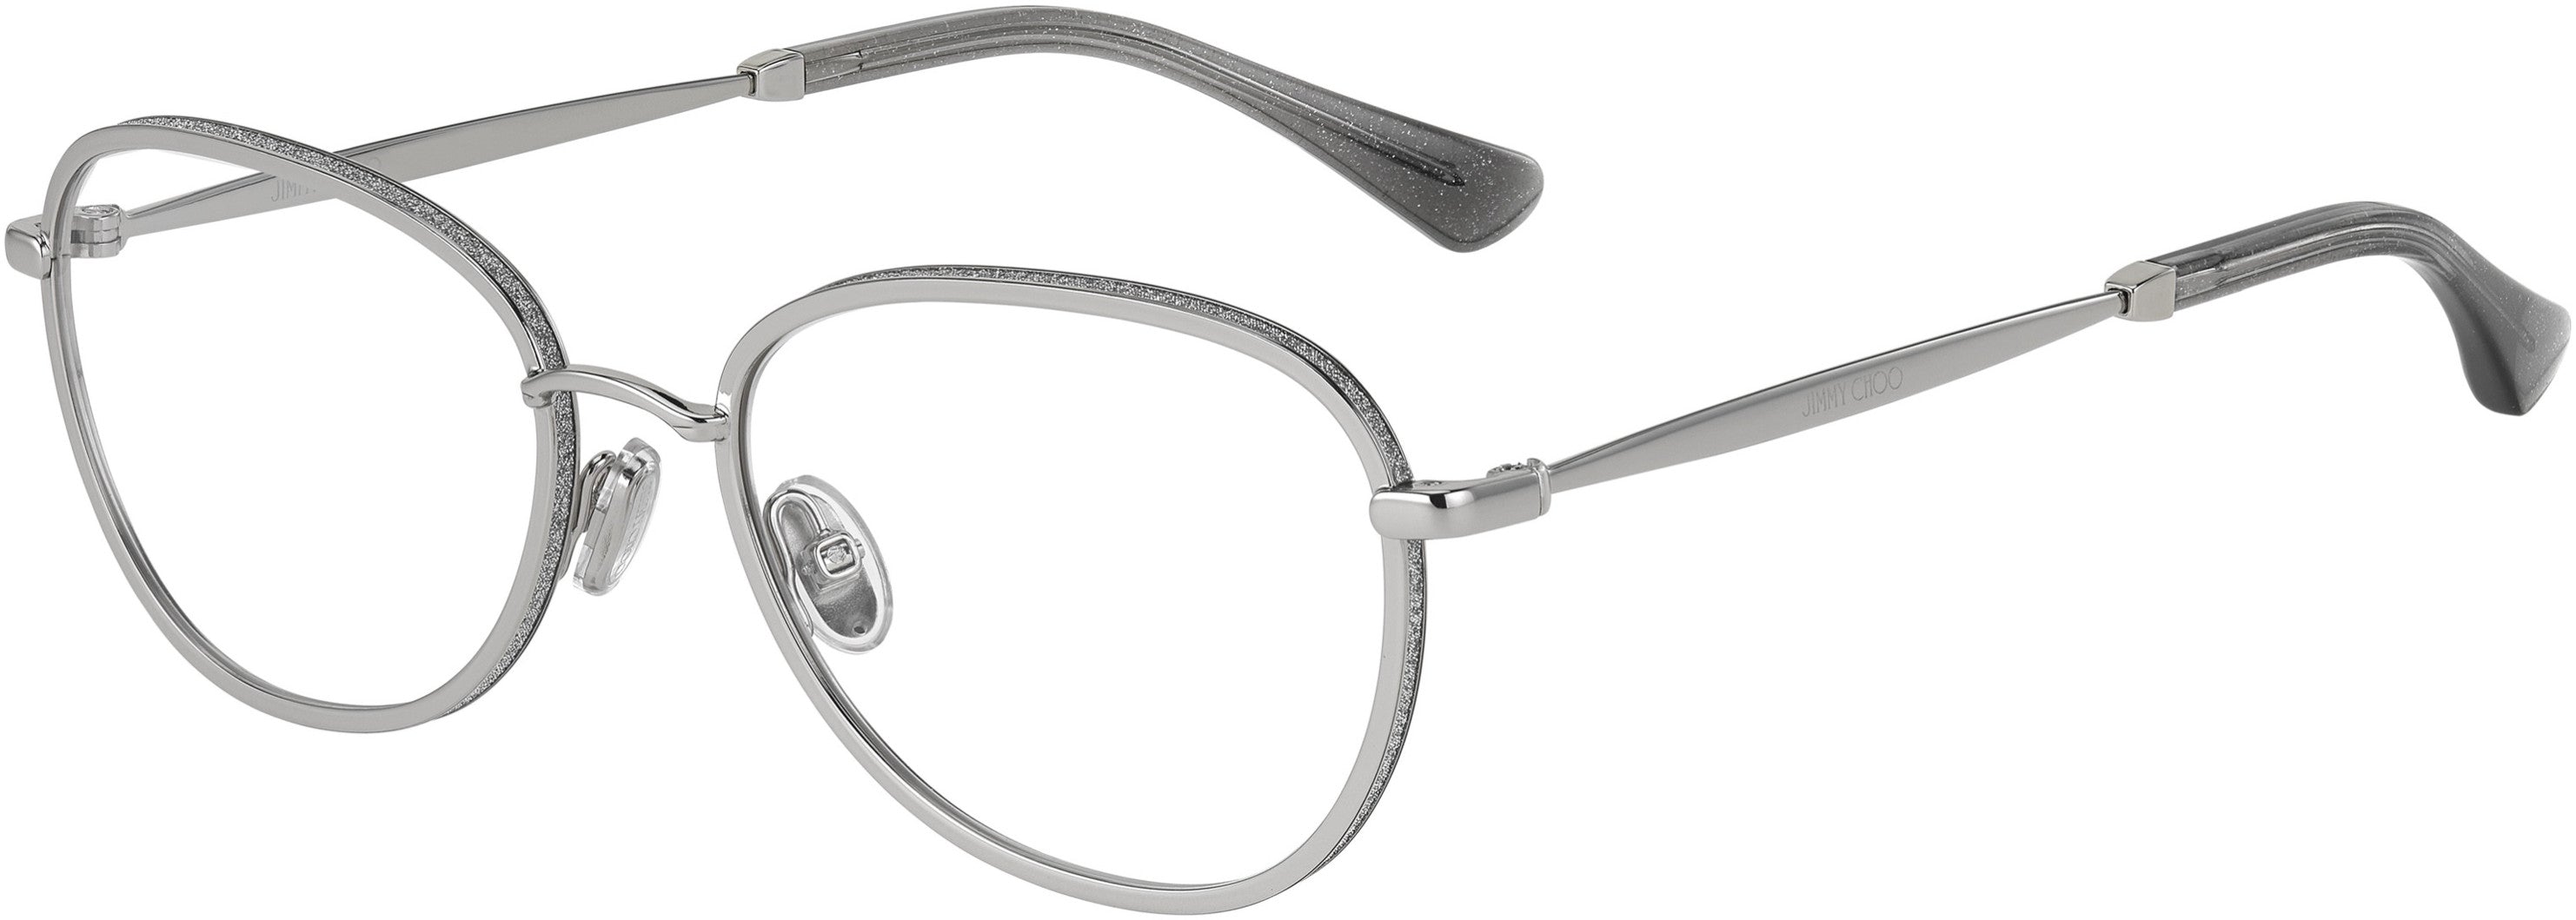  Jimmy Choo 229 Oval Modified Eyeglasses 0YB7-0YB7  Silver (00 Demo Lens)